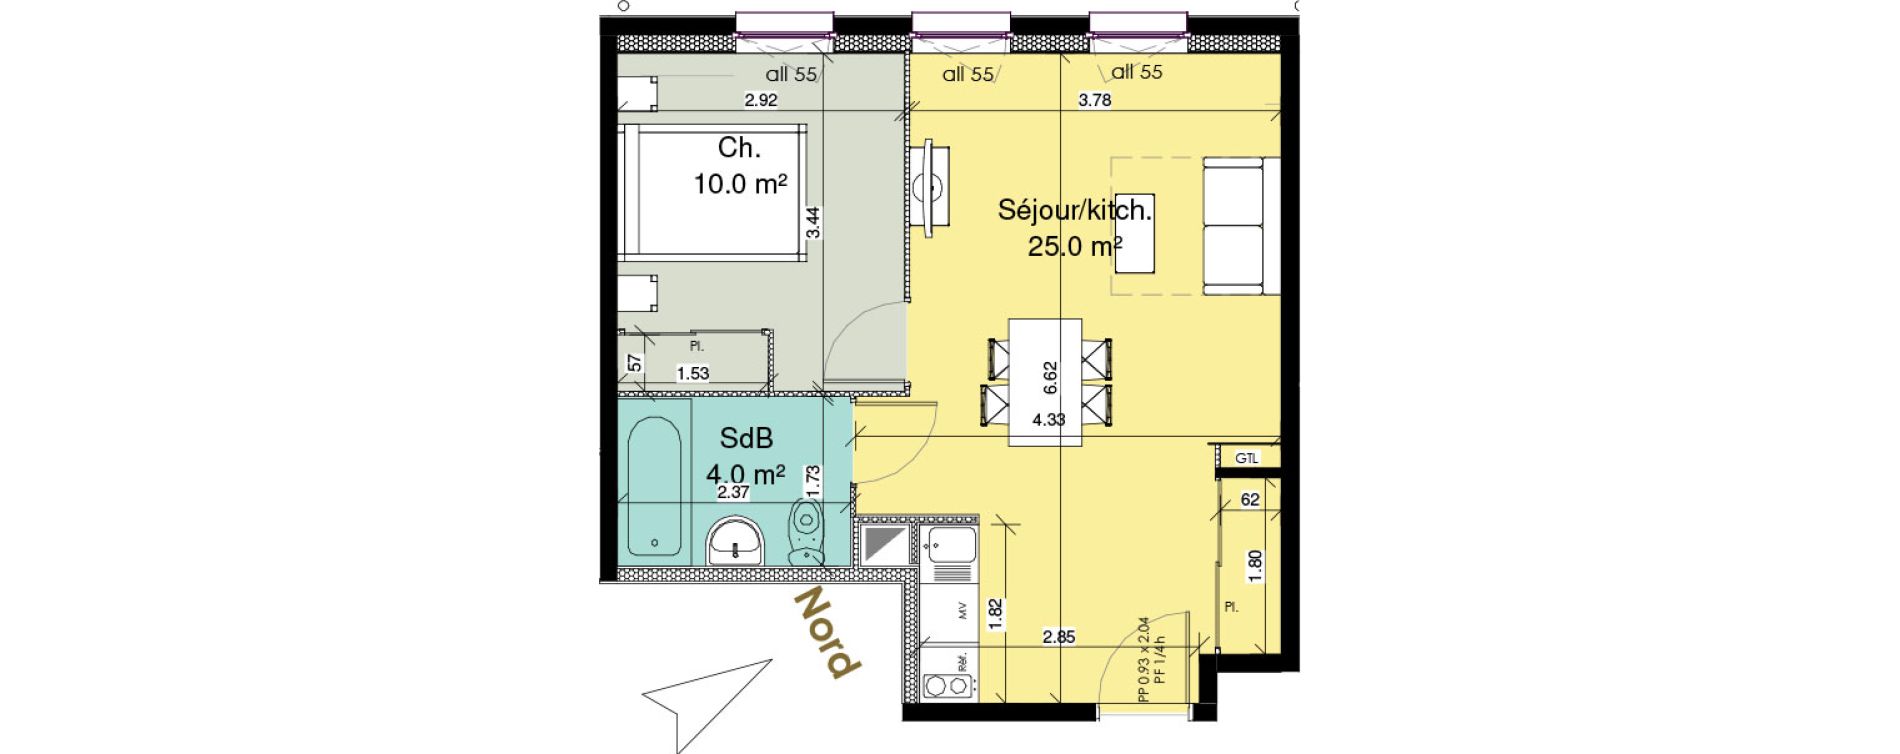 Appartement T2 meubl&eacute; de 39,00 m2 au Tr&eacute;port Centre